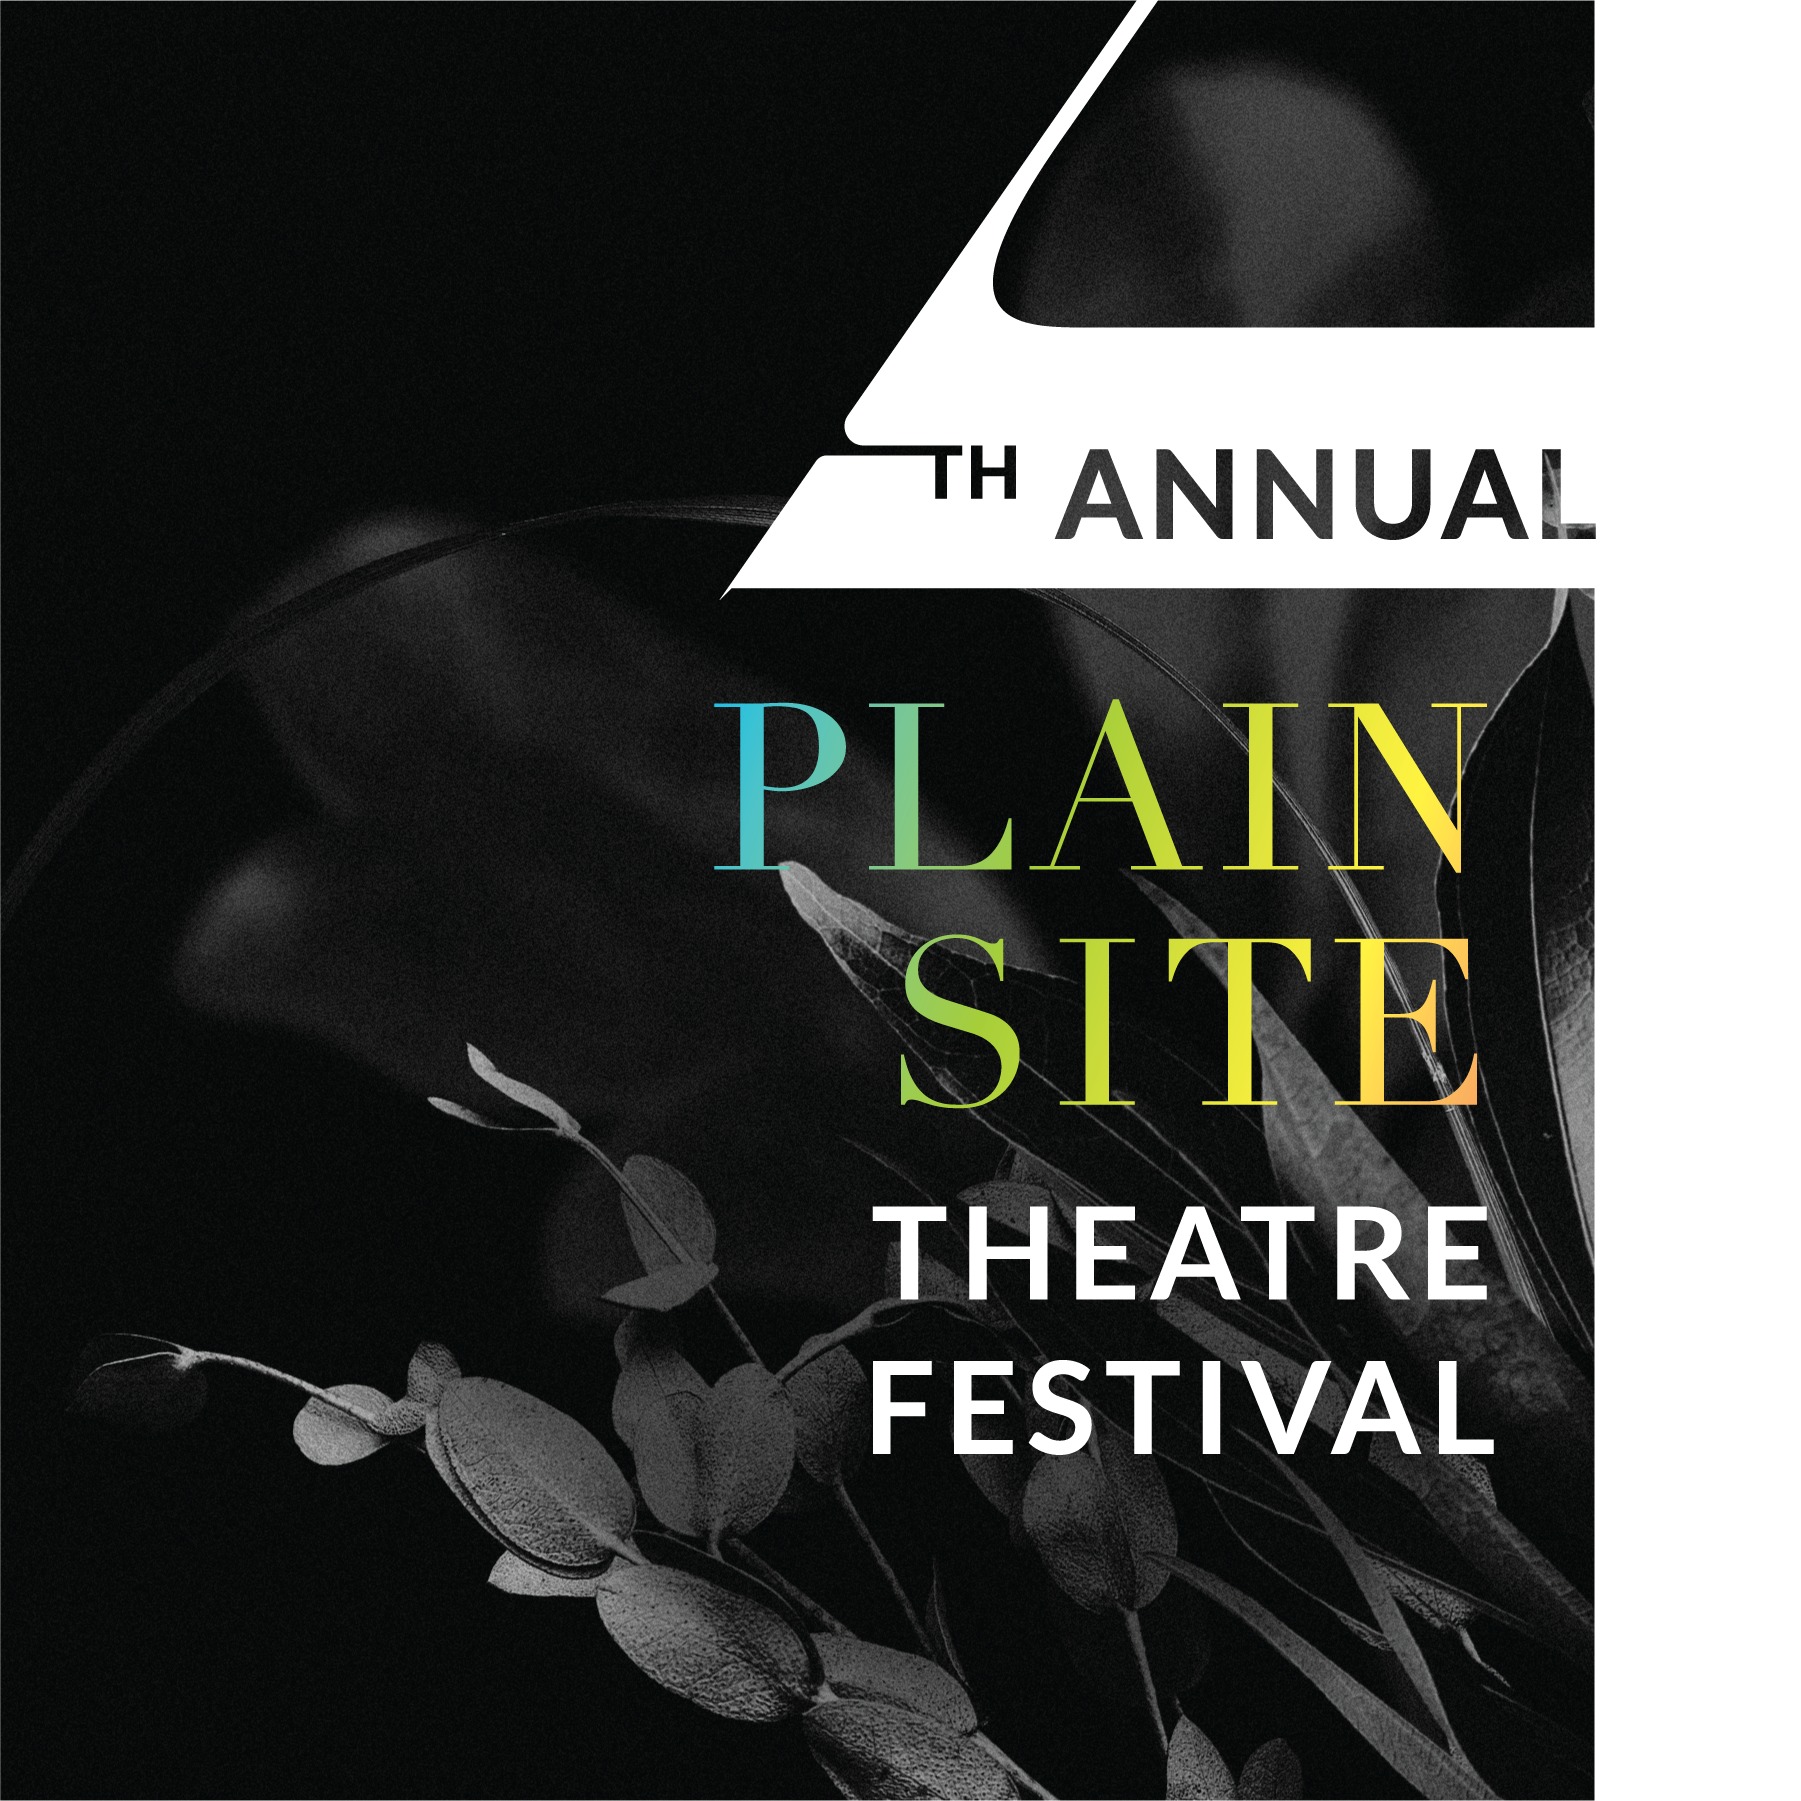 th Annual Plain Site Theatre Festival